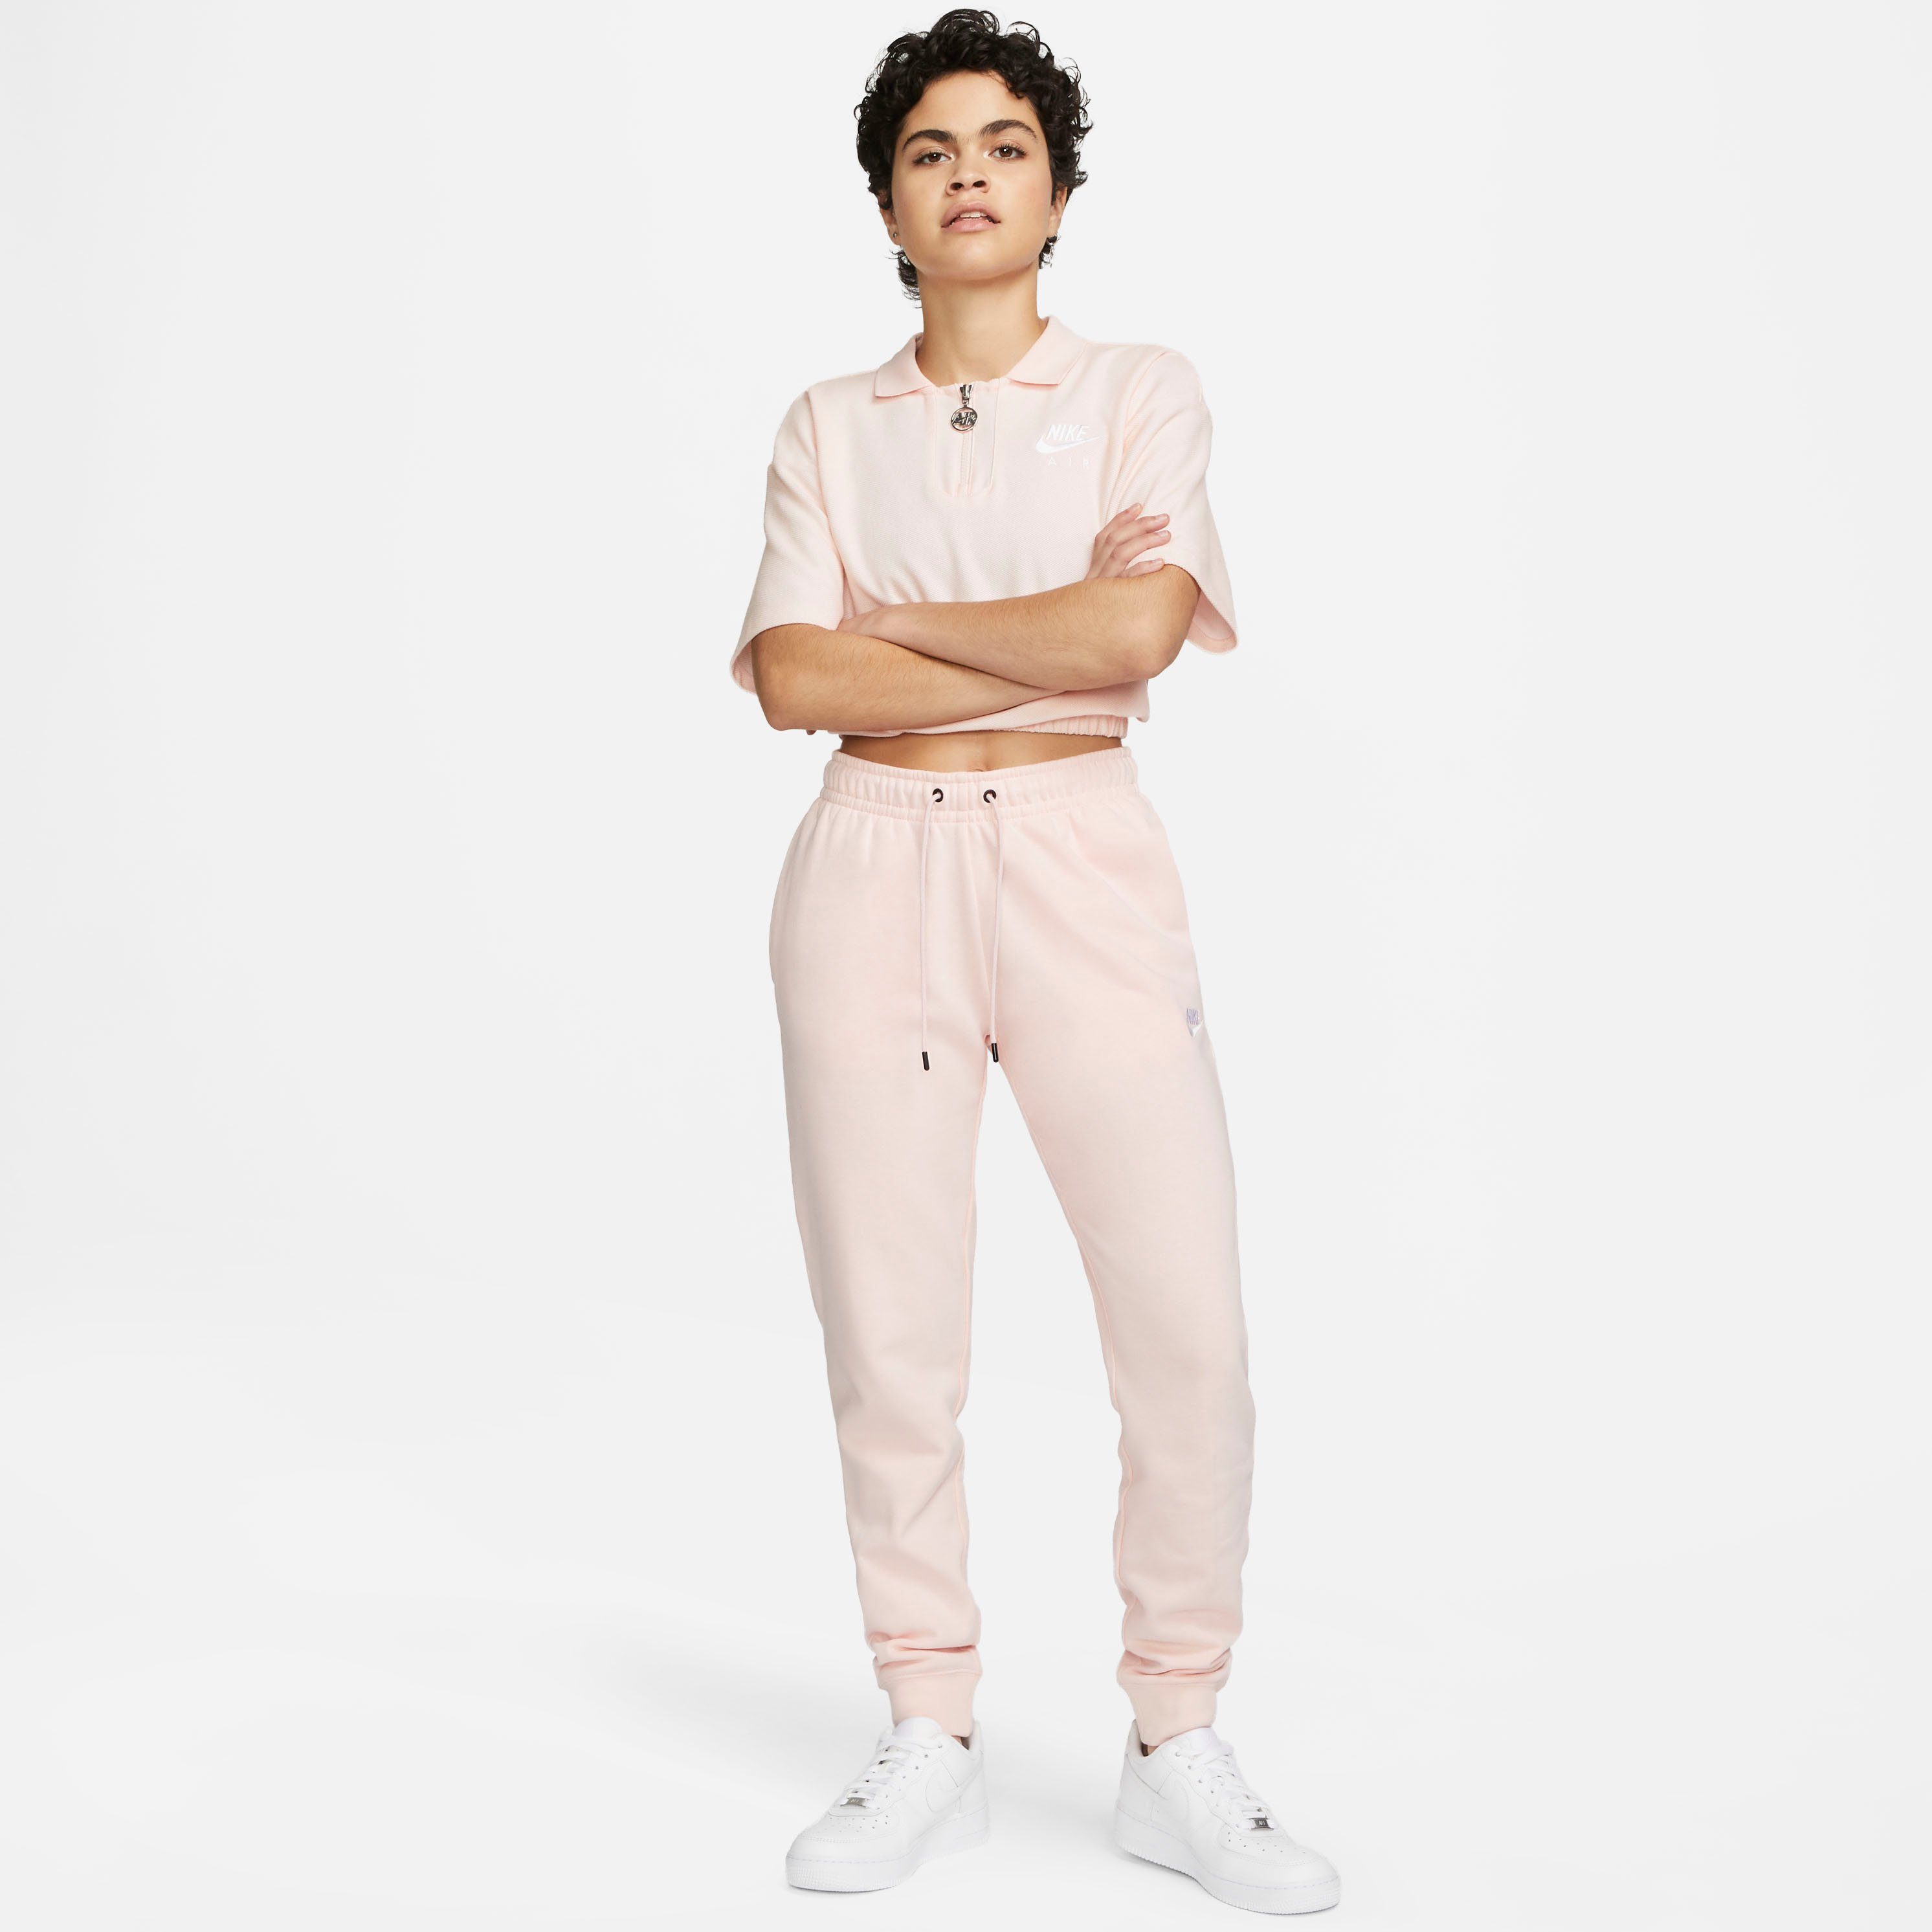 ESSENTIAL PANTS WOMENS Jogginghose rosa Sportswear FLEECE Nike